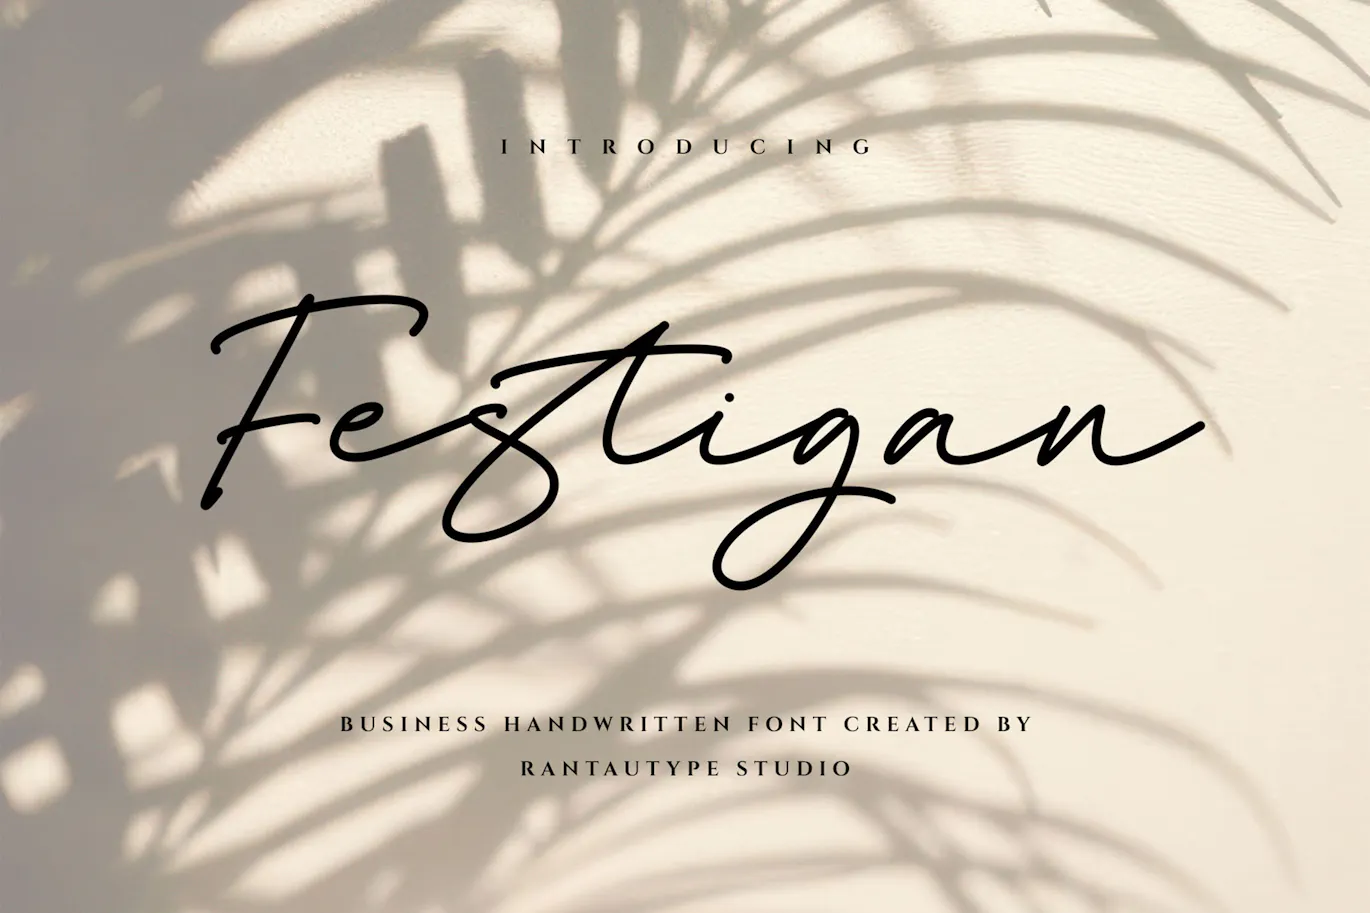 高级时装品牌的英文手写字体 - Festigan Business 设计字体 第12张